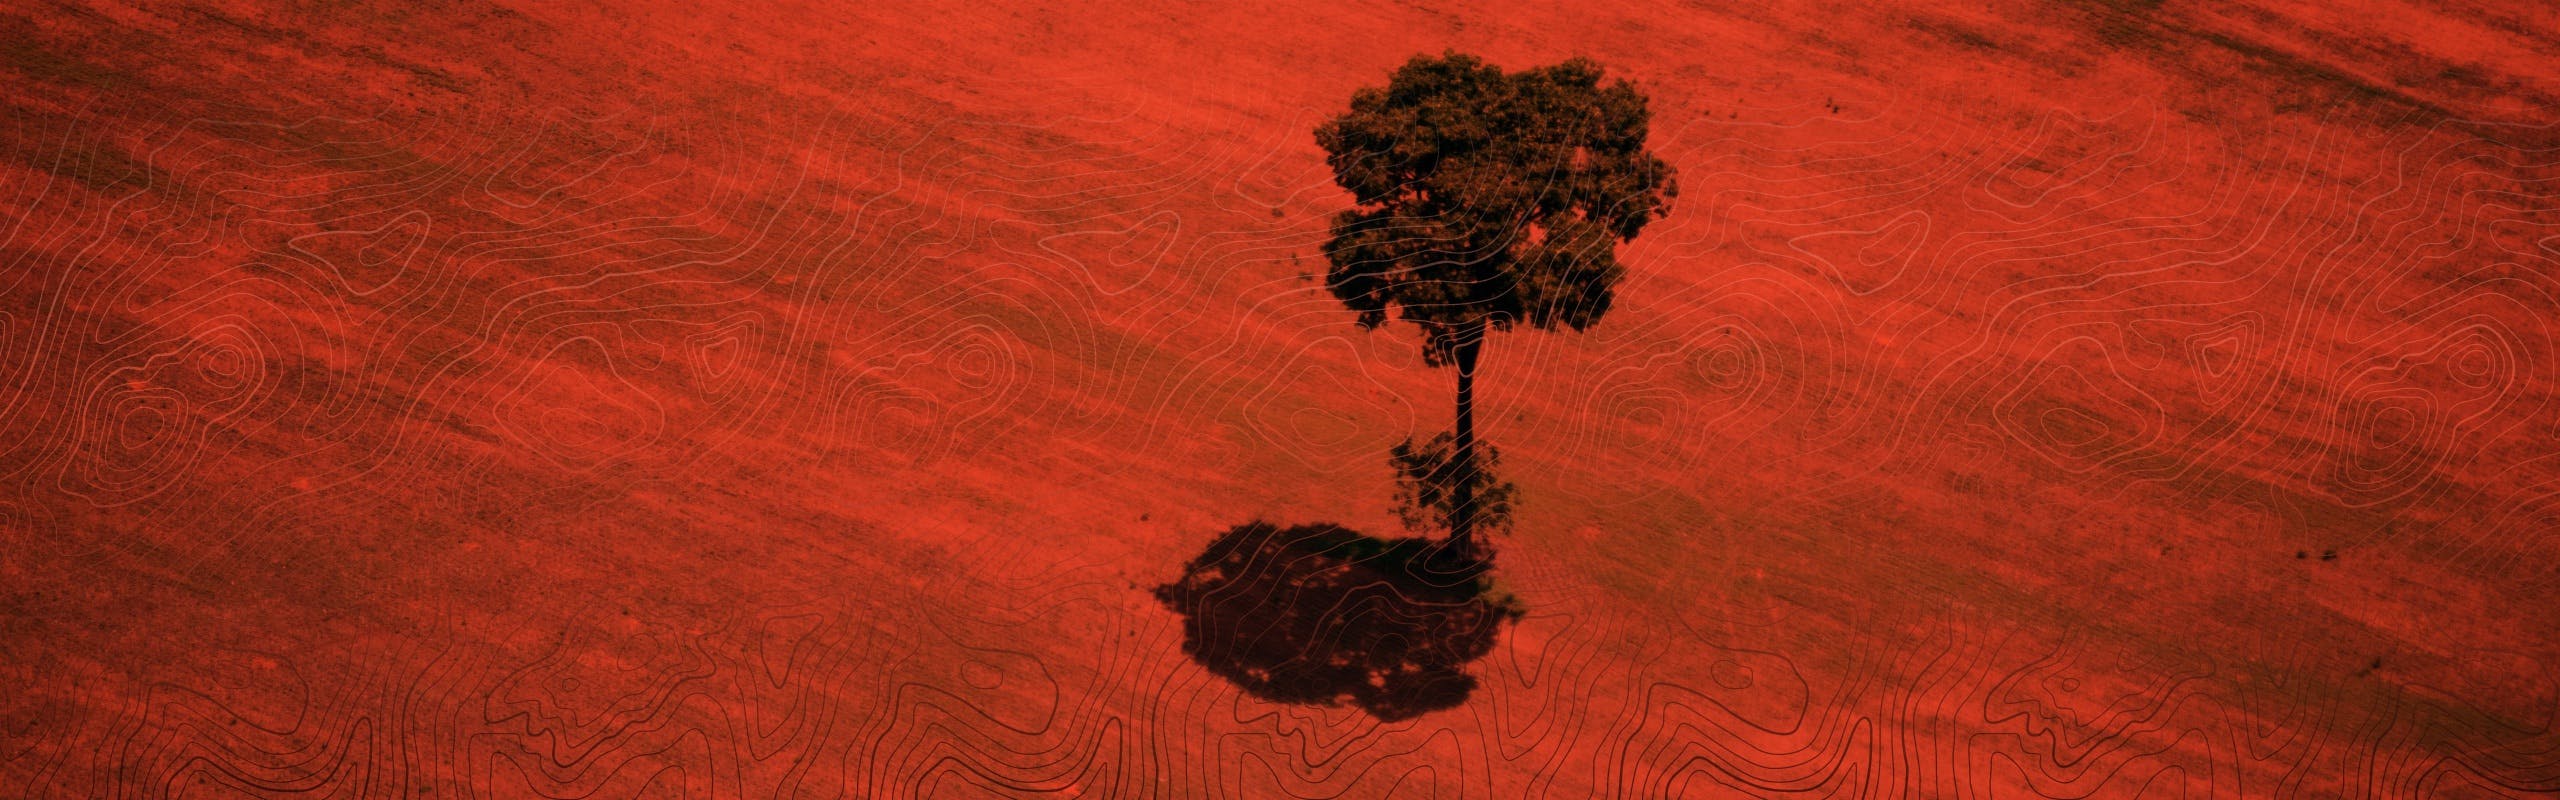 Cover Image for 8.1 Síntomas y consecuencias - Deforestación